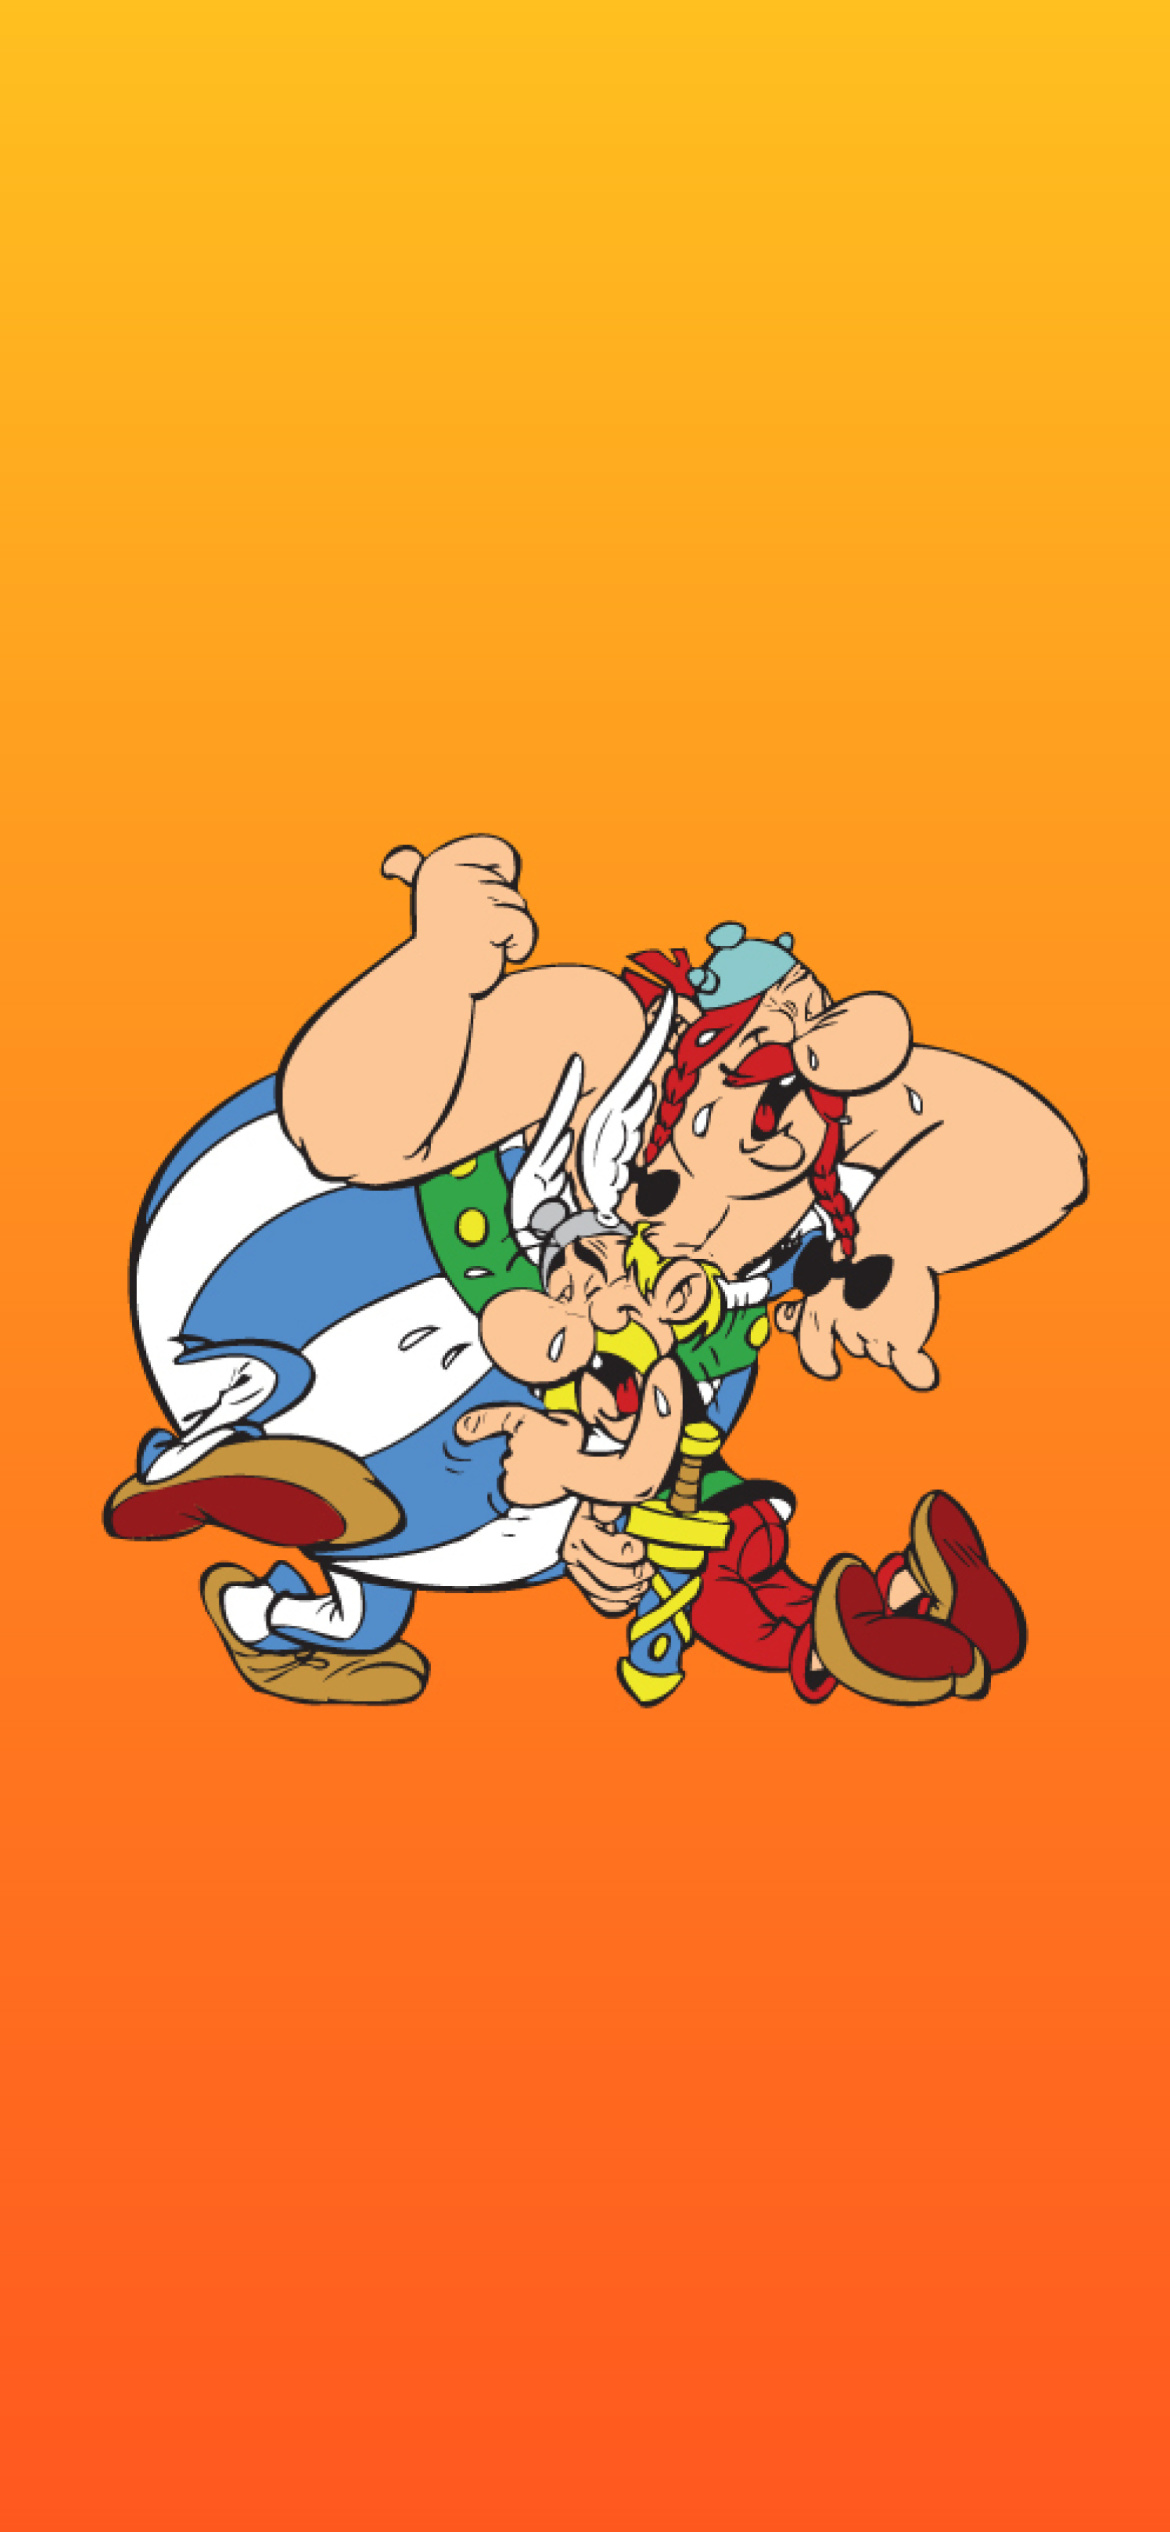 Asterix and Obelix wallpaper 1170x2532